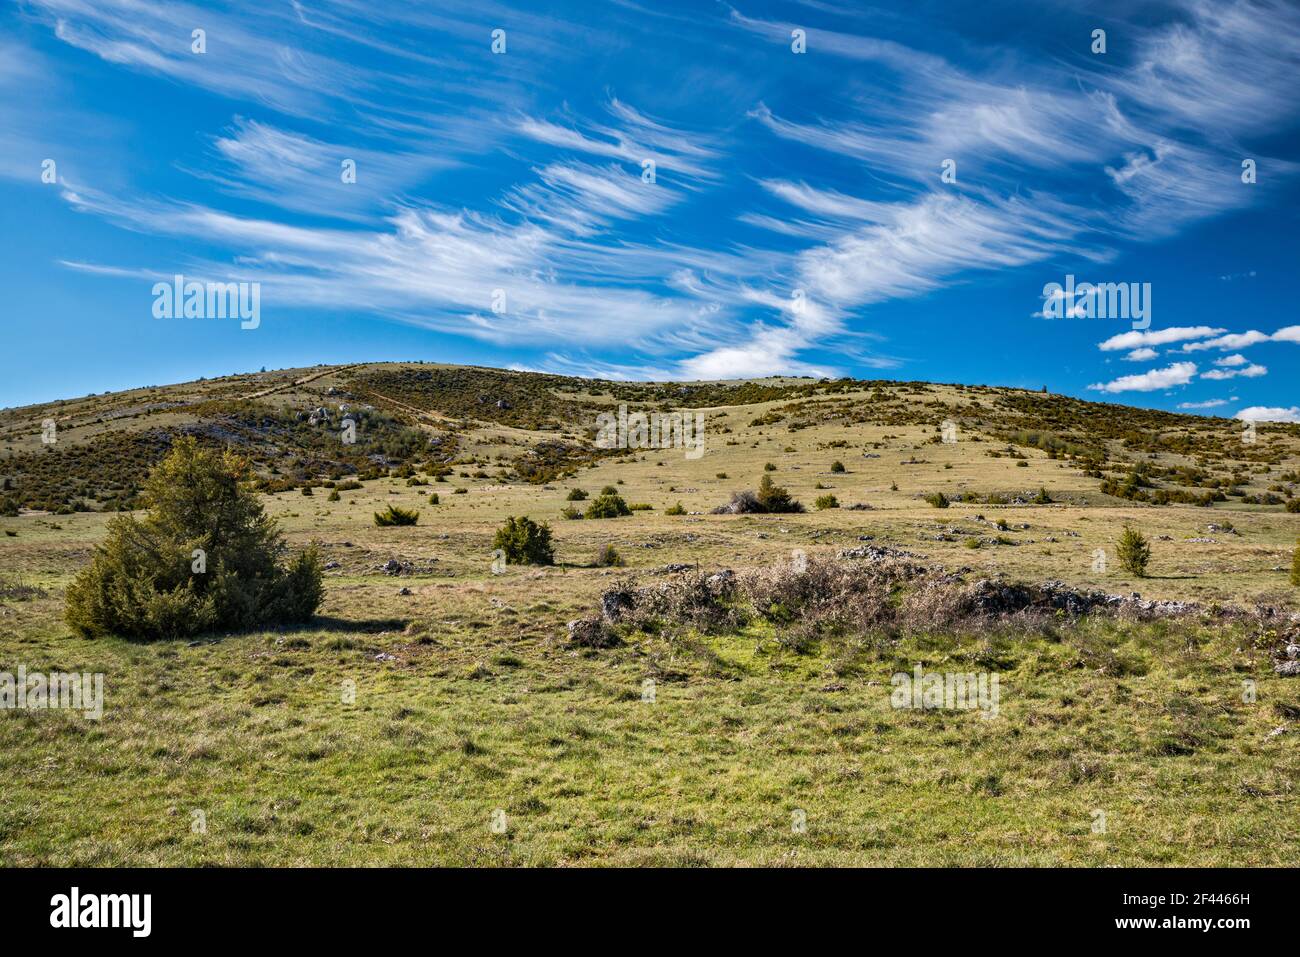 Paysage des causses arides, nuages cirrus, vue de la route D16, au plateau du Causse Mejean, massif Central, département de Lozère, région occitanie, France Banque D'Images